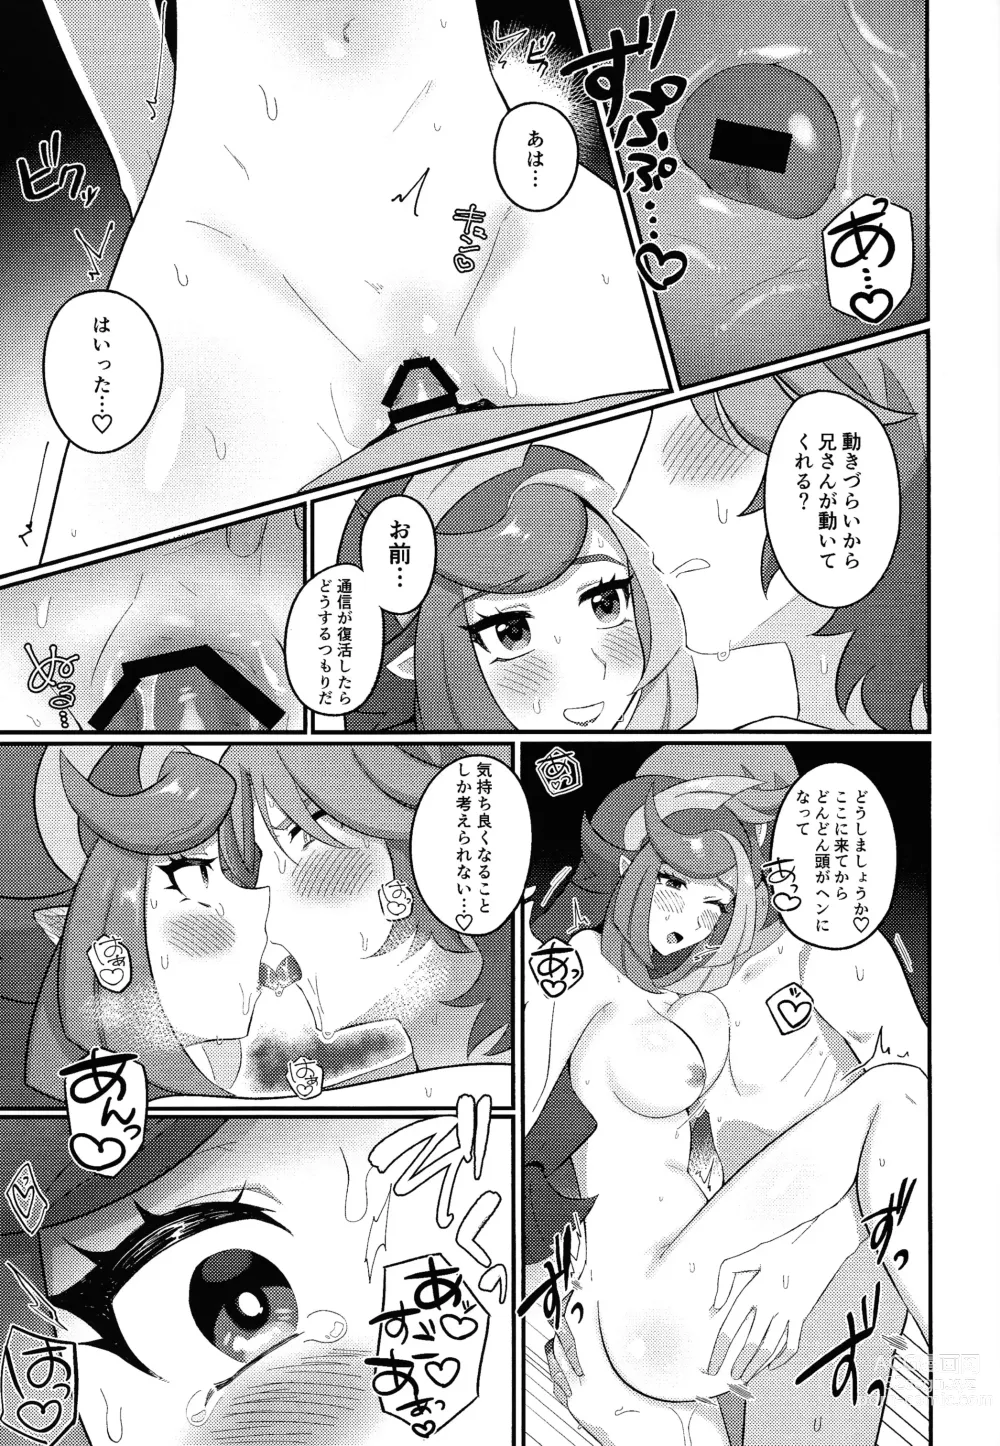 Page 16 of doujinshi Sennyuu Ero Trap World